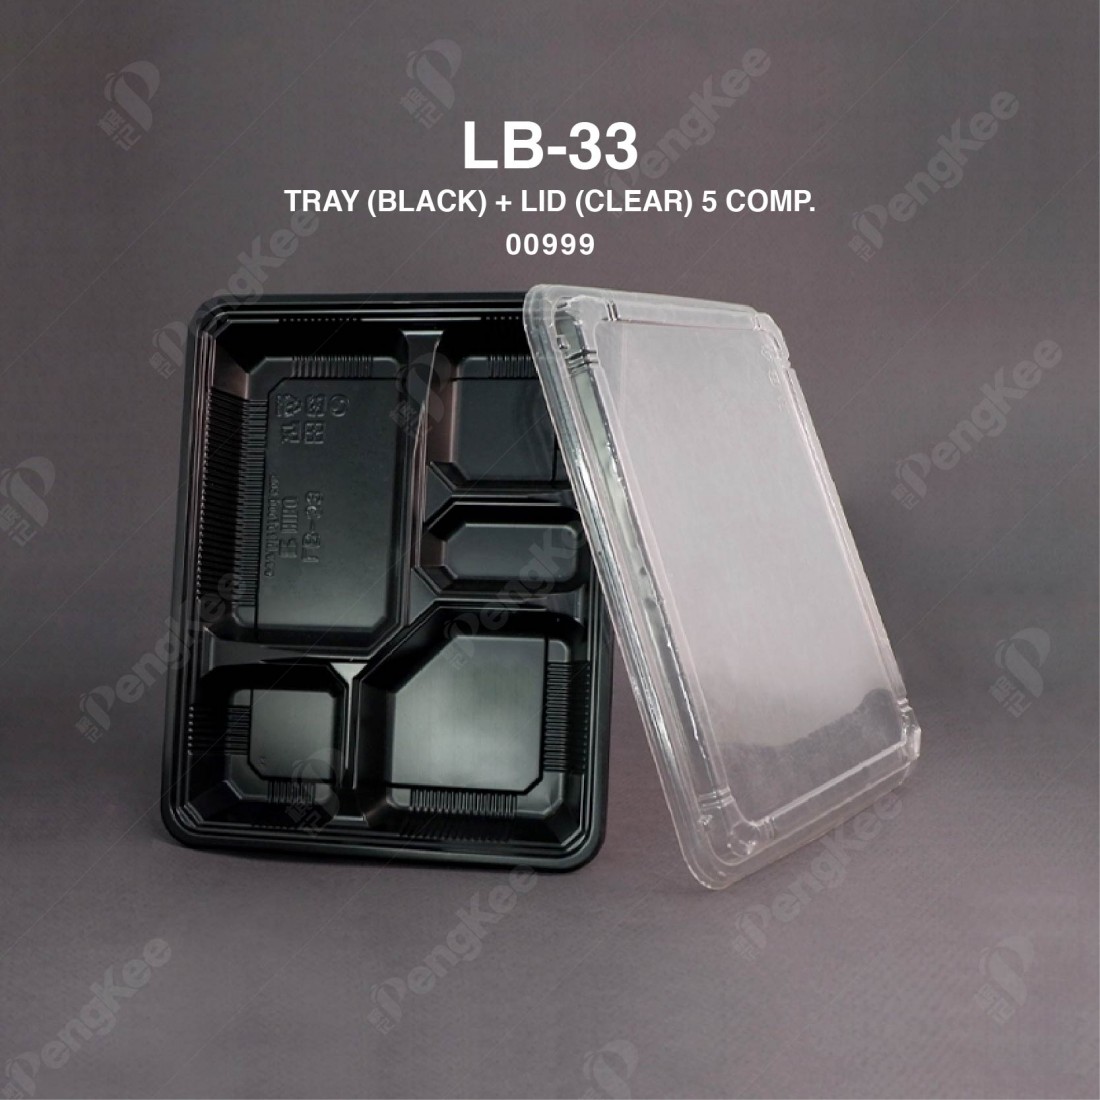 LB-33 TRAY (BLK) + LID (CLEAR) (5 COMP.)